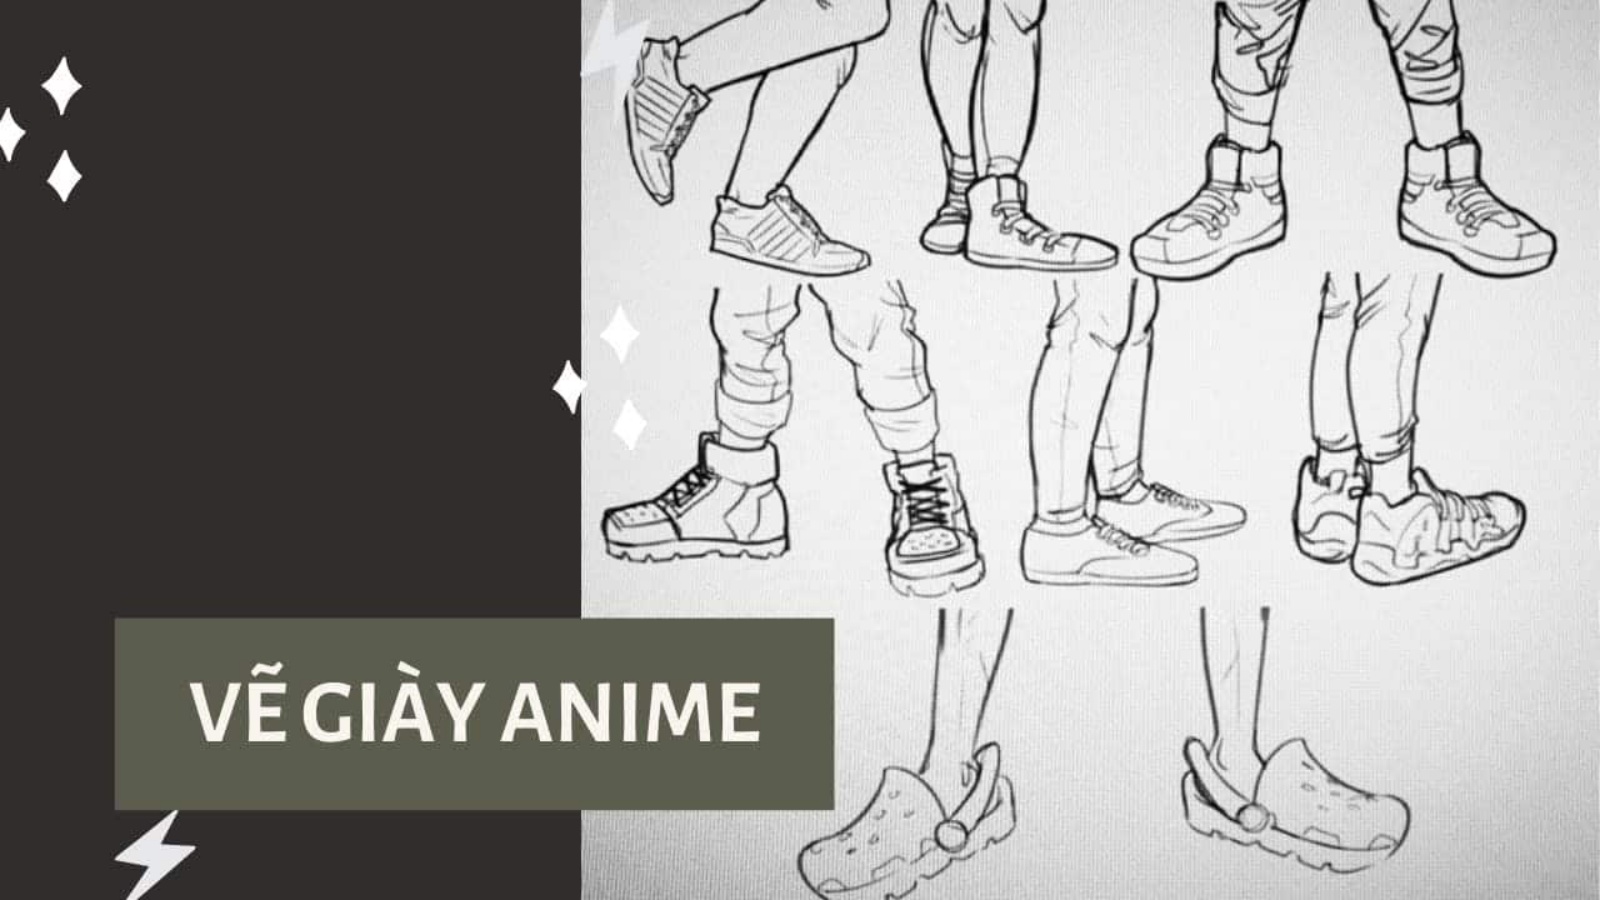 Cách vẽ anime đơn giản, nhanh chóng cho người mới bắt đầu